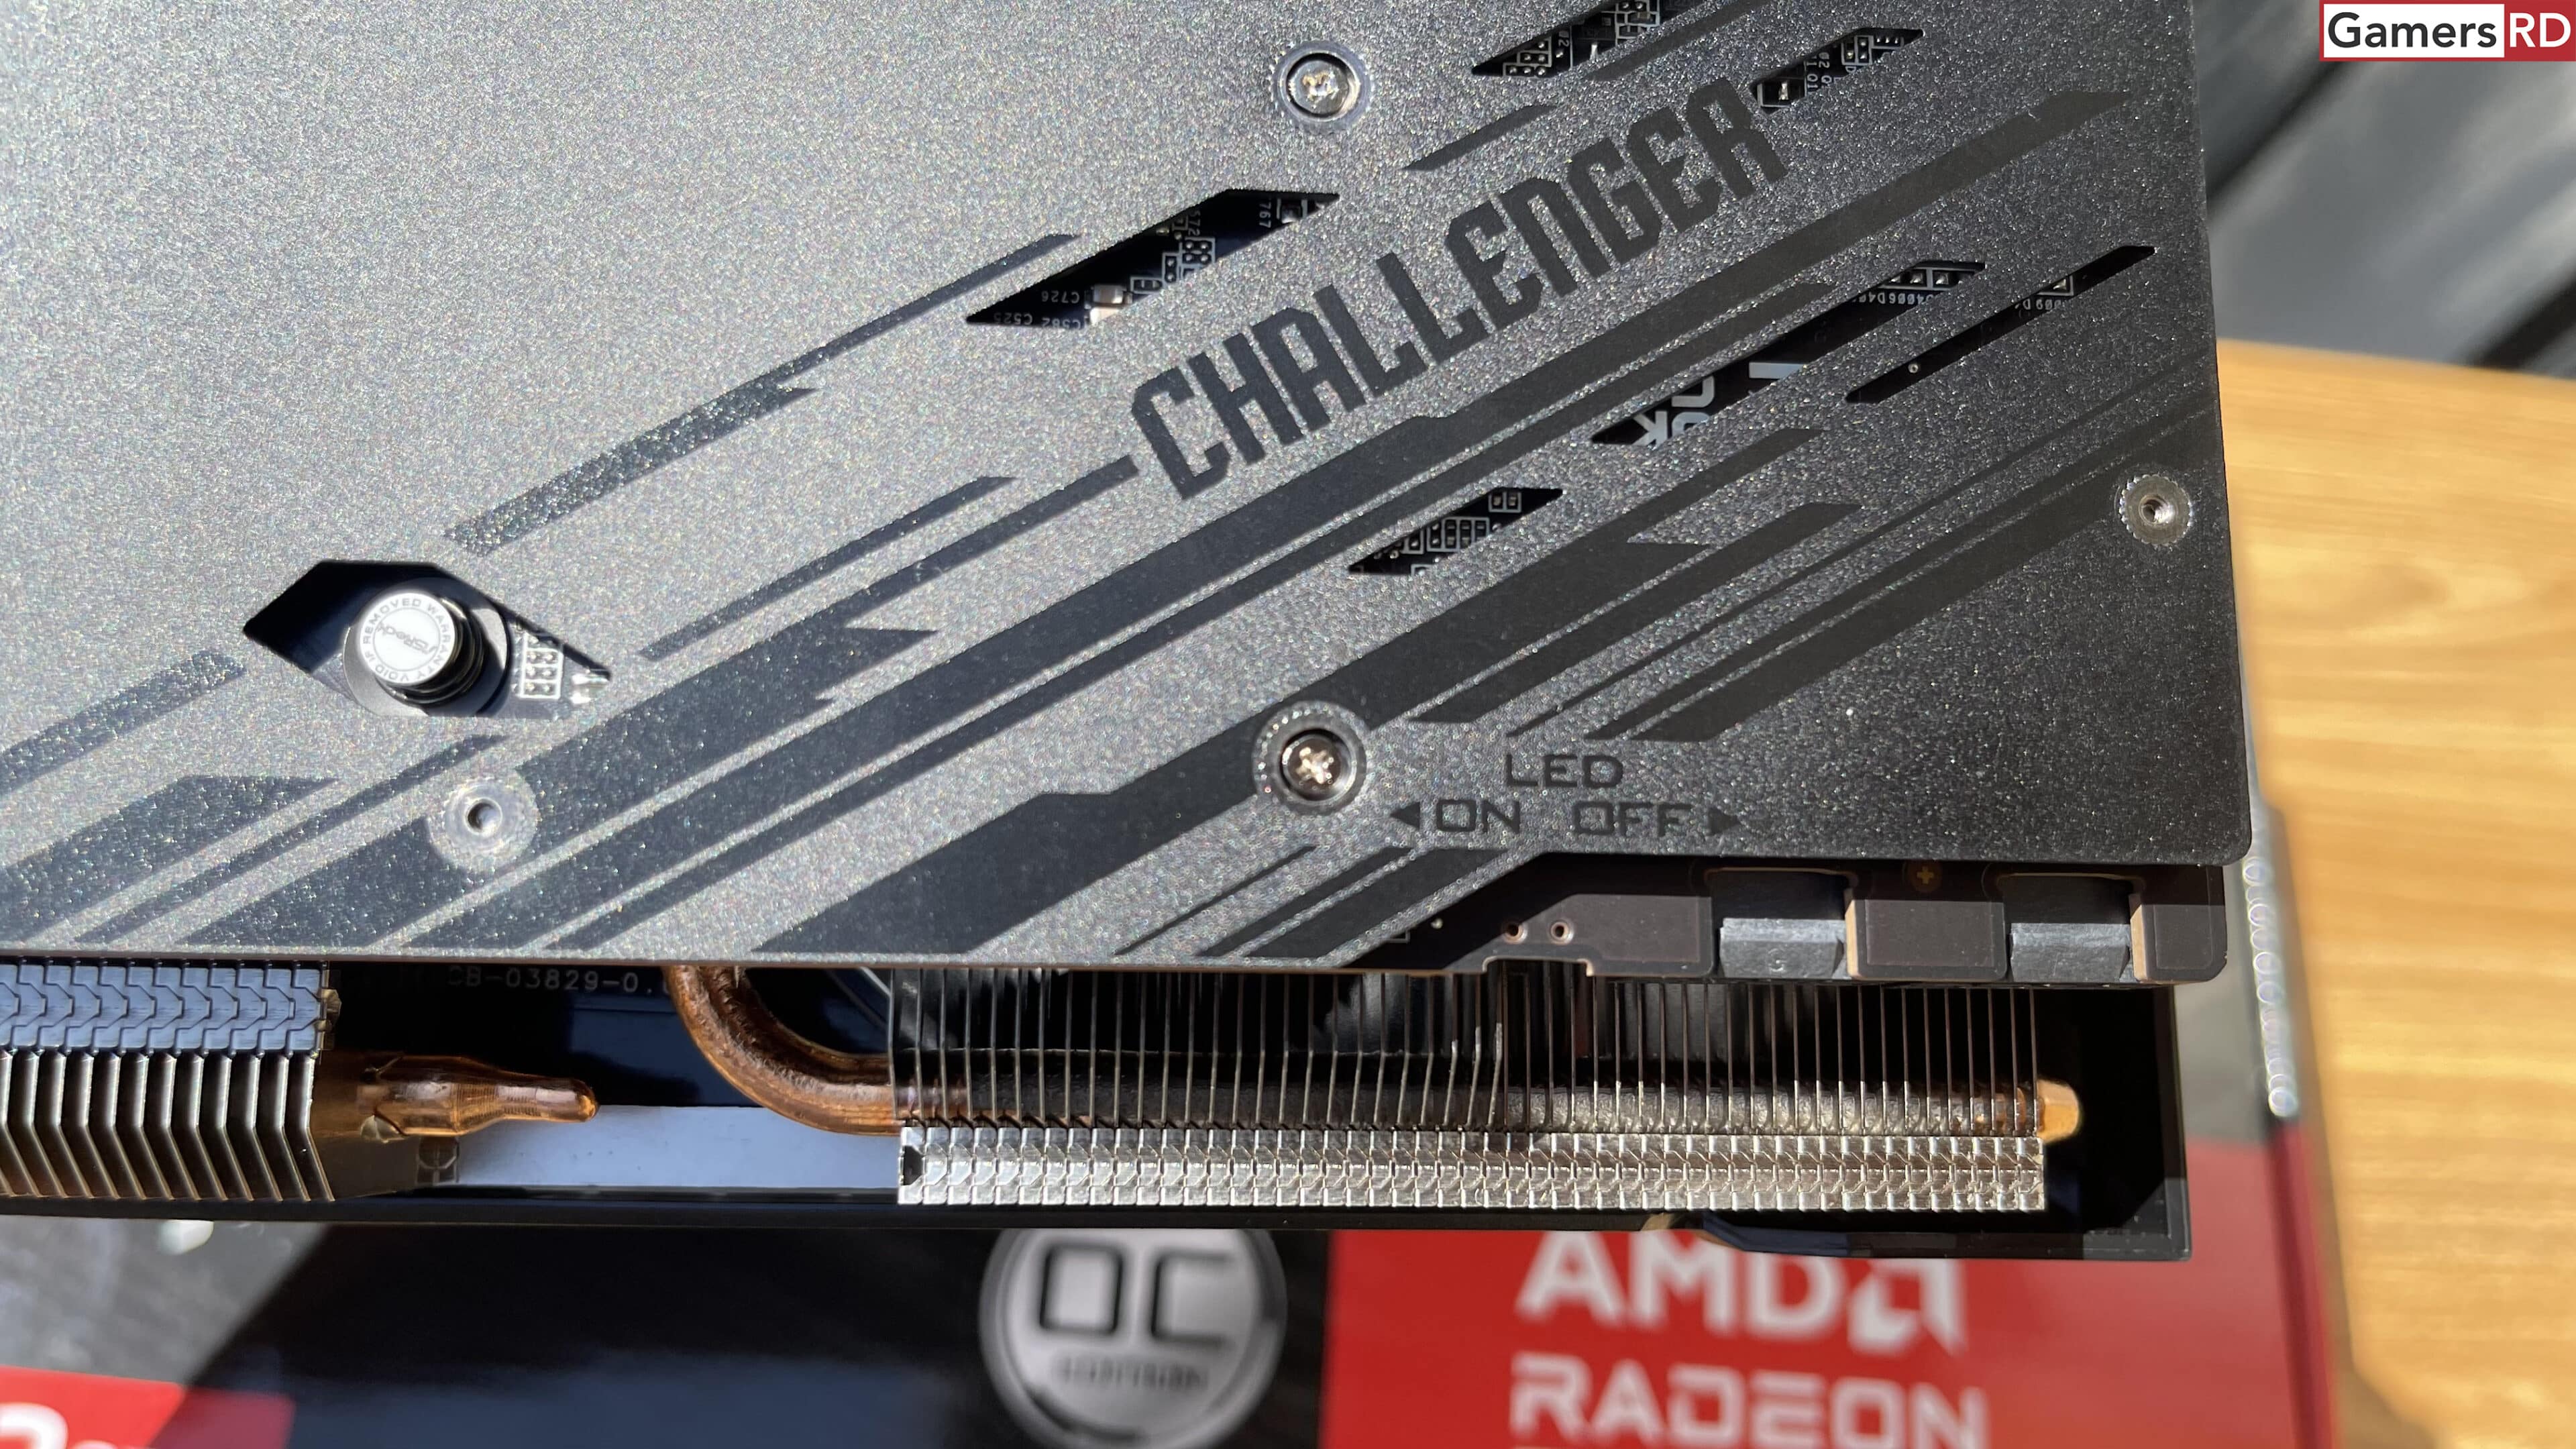 AMD Radeon RX 7700 XT AsRock Challenger OC Review GamersRD132